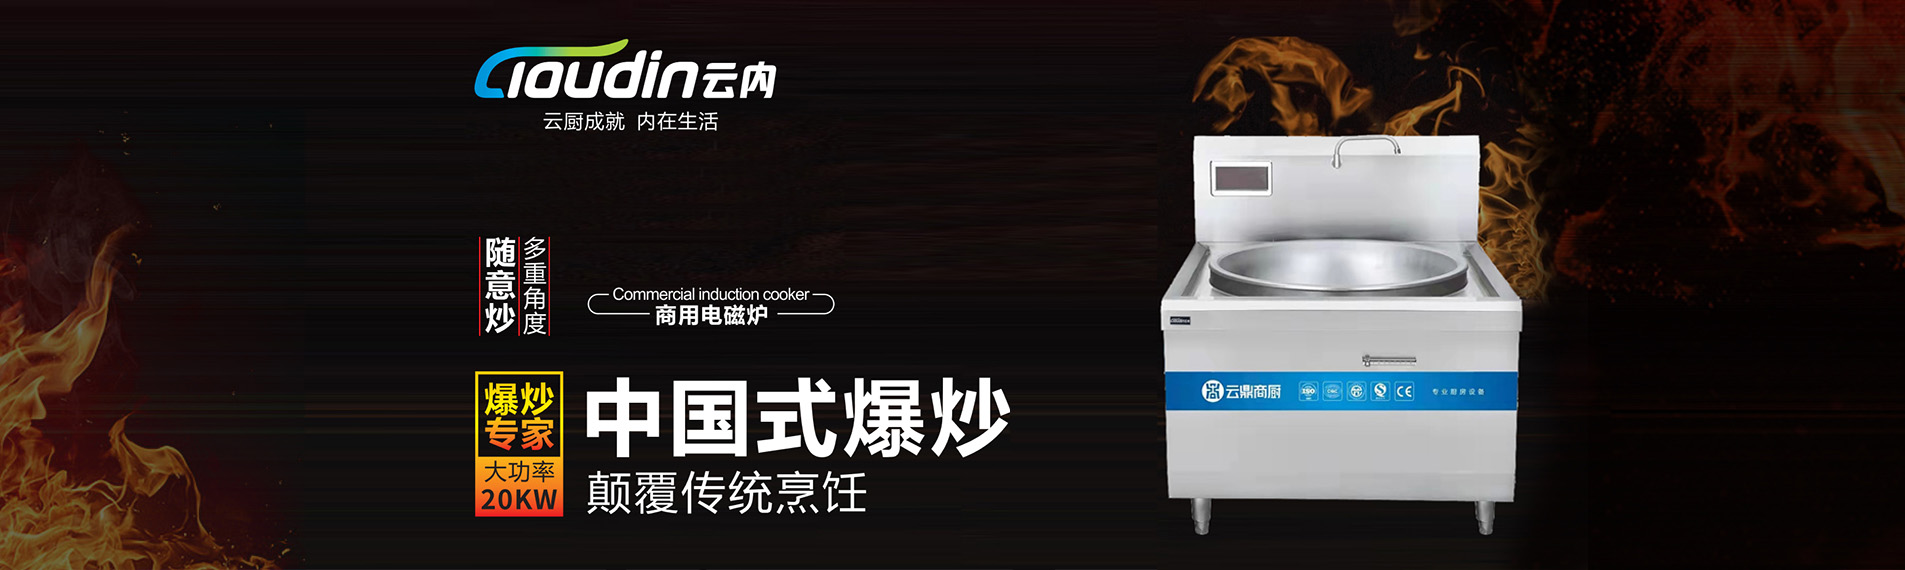 上海油煙凈化一體機與普通抽油煙機的區別